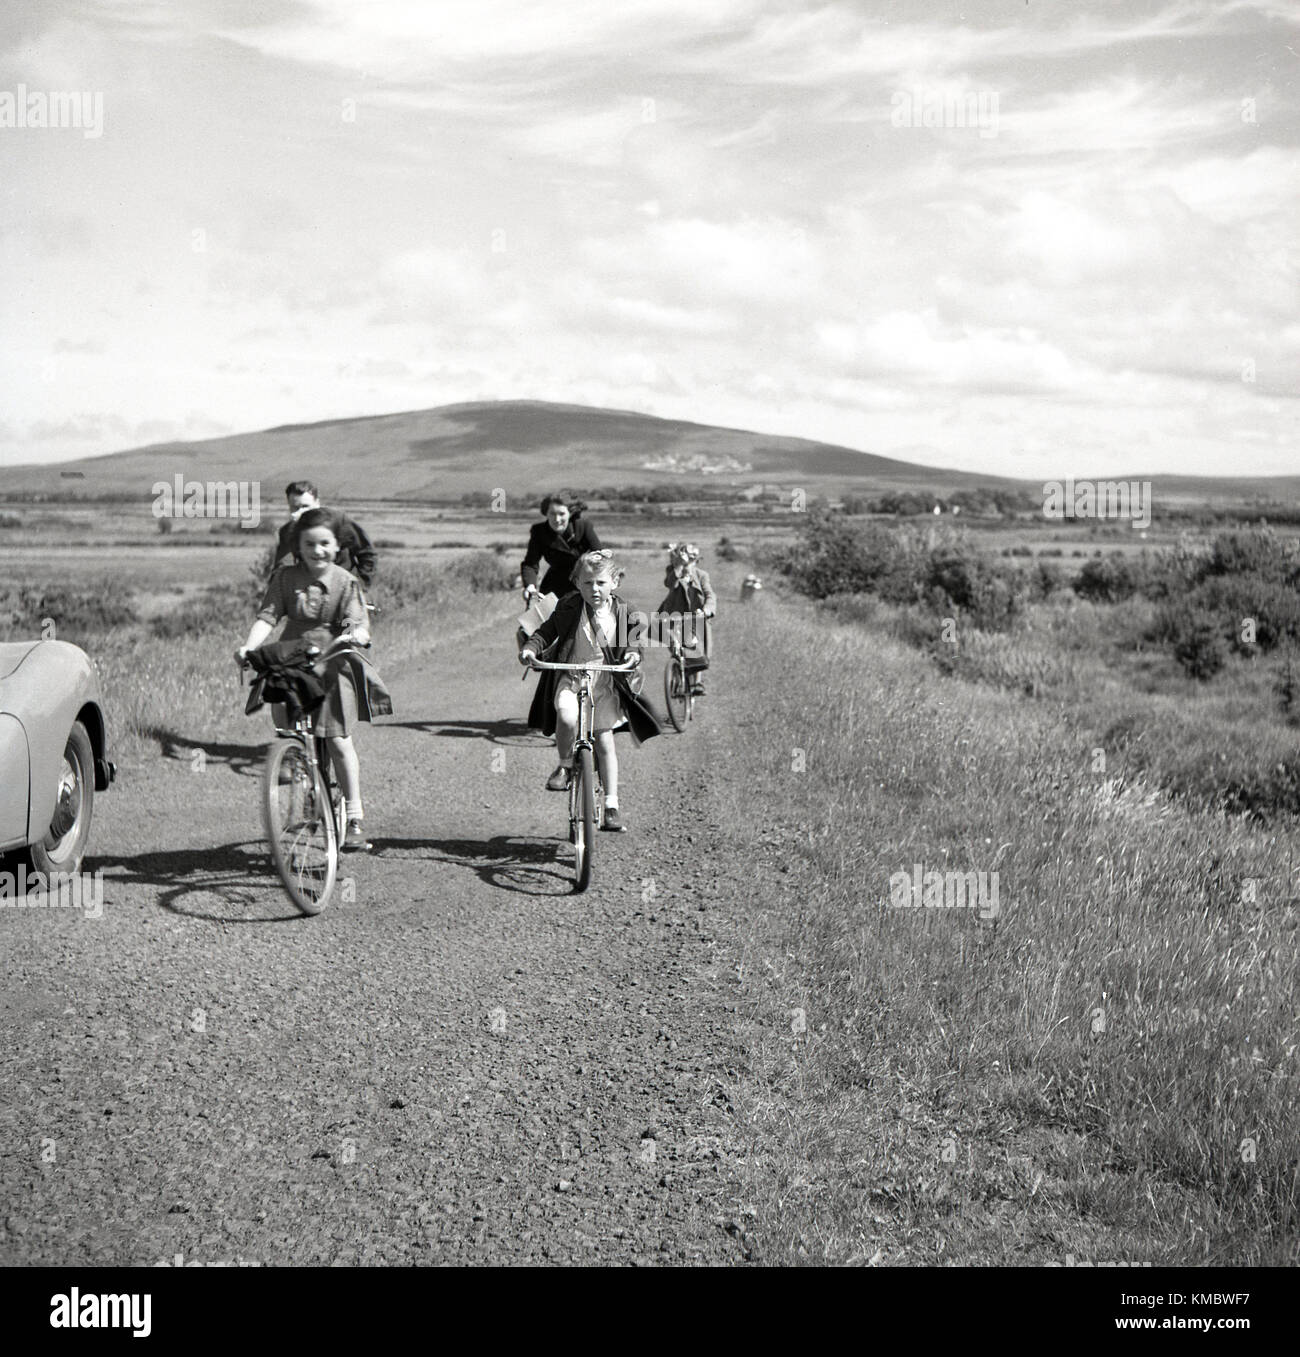 Années 1950, historiques, mère et père à vélo avec leurs jeunes enfants le long d'une piste, la campagne d'Irlande du Nord. Ils sont soit de rendre visite à des parents ou peut-être pour visiter une église que les filles sont tous des robes. Banque D'Images